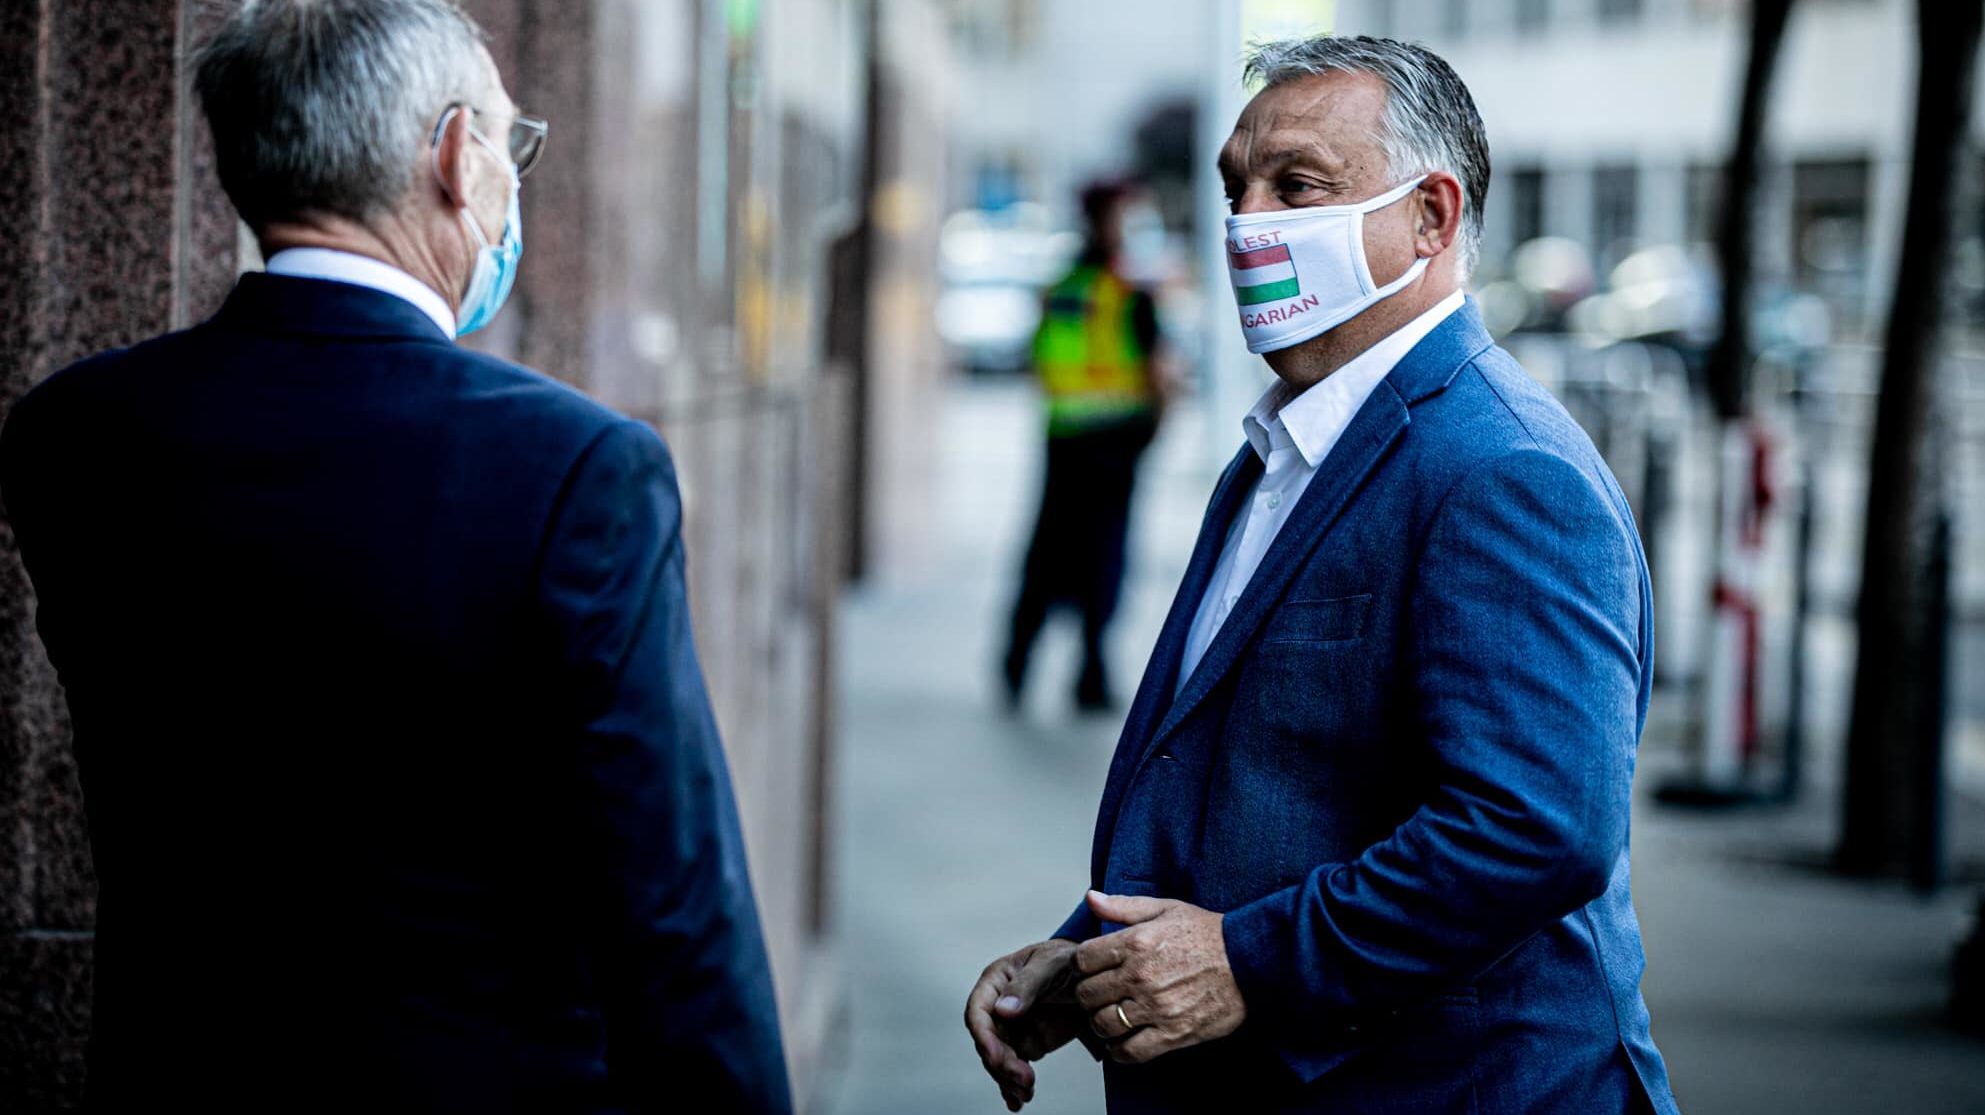 Orbán megkérte a fideszes képviselőket, hordjanak maszkot